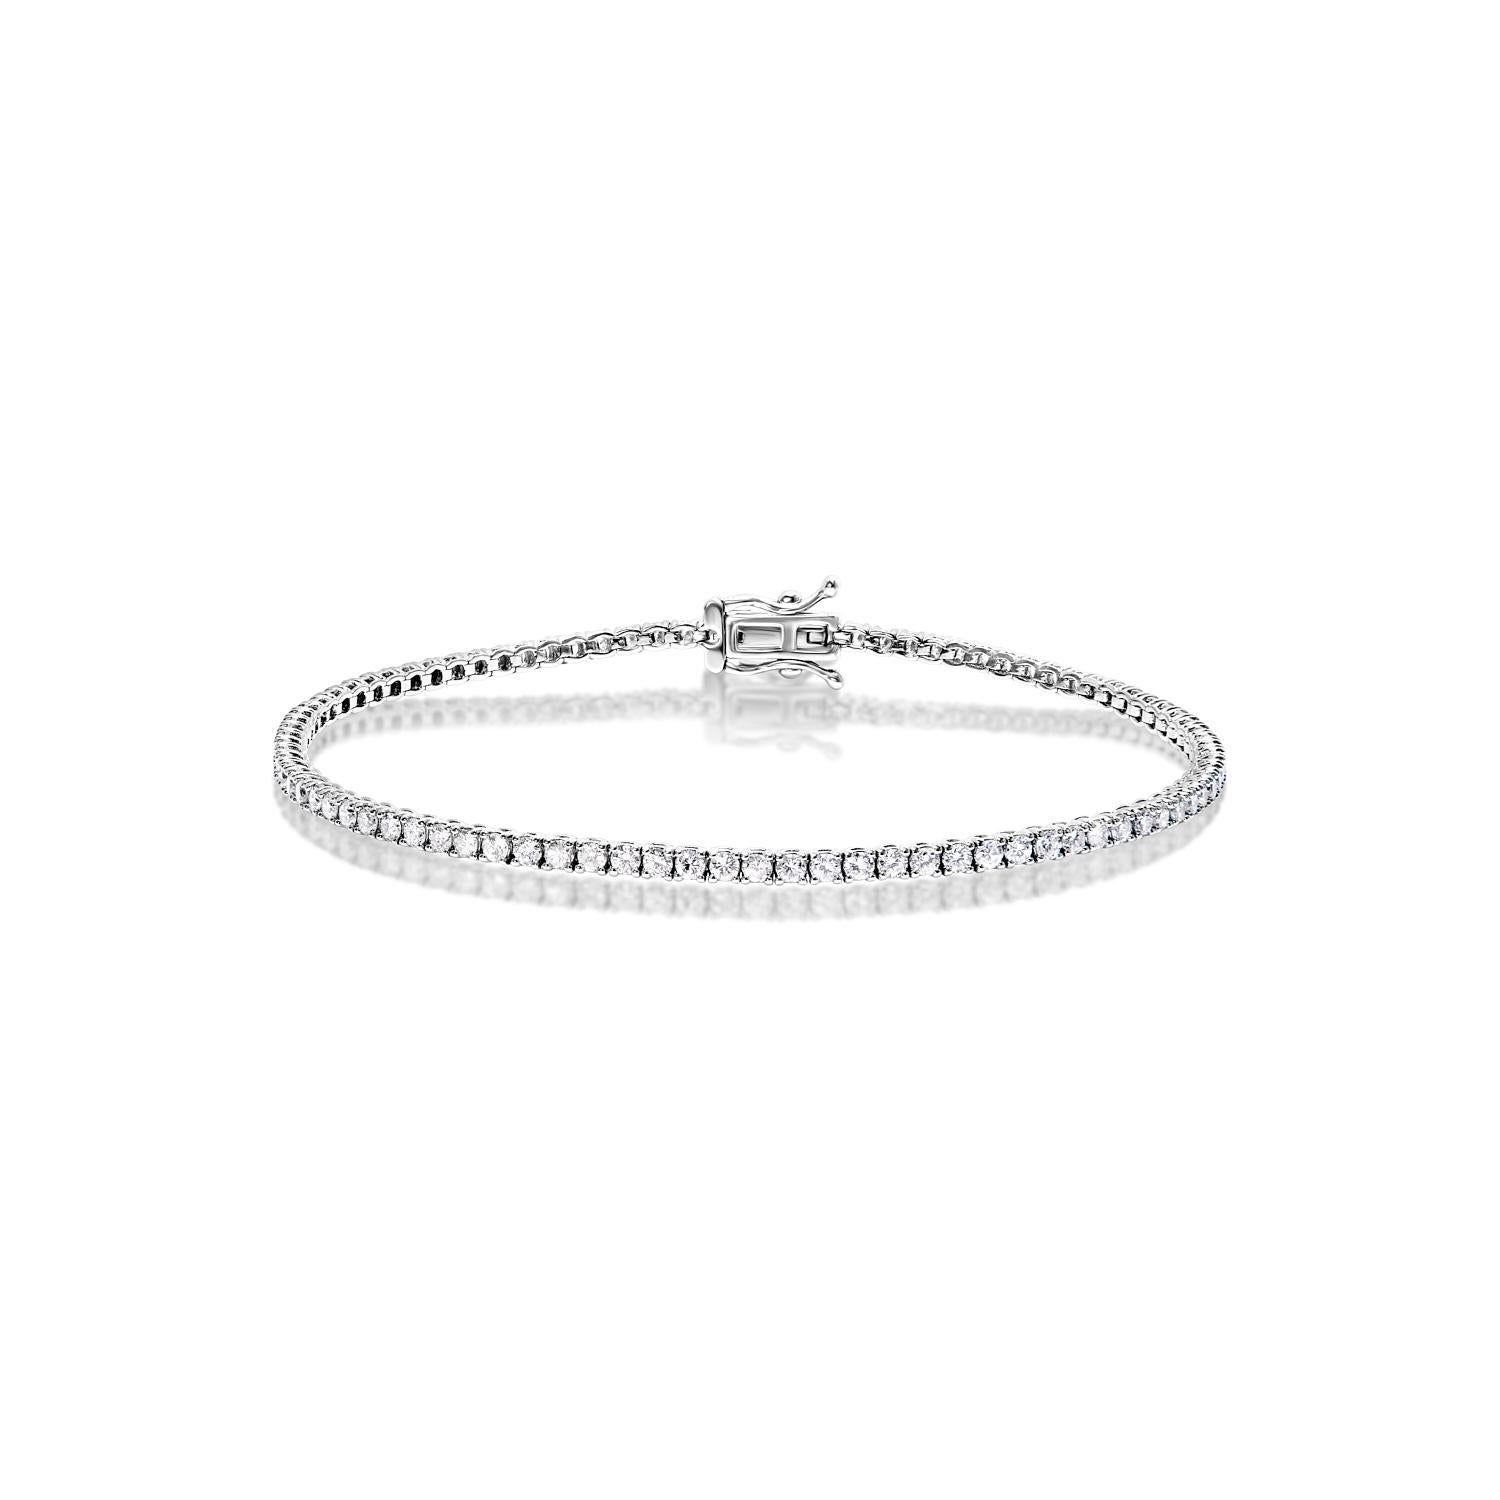 Le bracelet de tennis CALLIOPE 2 Carat Single Diamond comprend des DIAMONDS ronds et brillants pesant au total environ 2 carats, sertis dans de l'or blanc 14K.

Le style :
Diamants
Taille du diamant : 1,50 carats
Forme du diamant : Taille ronde